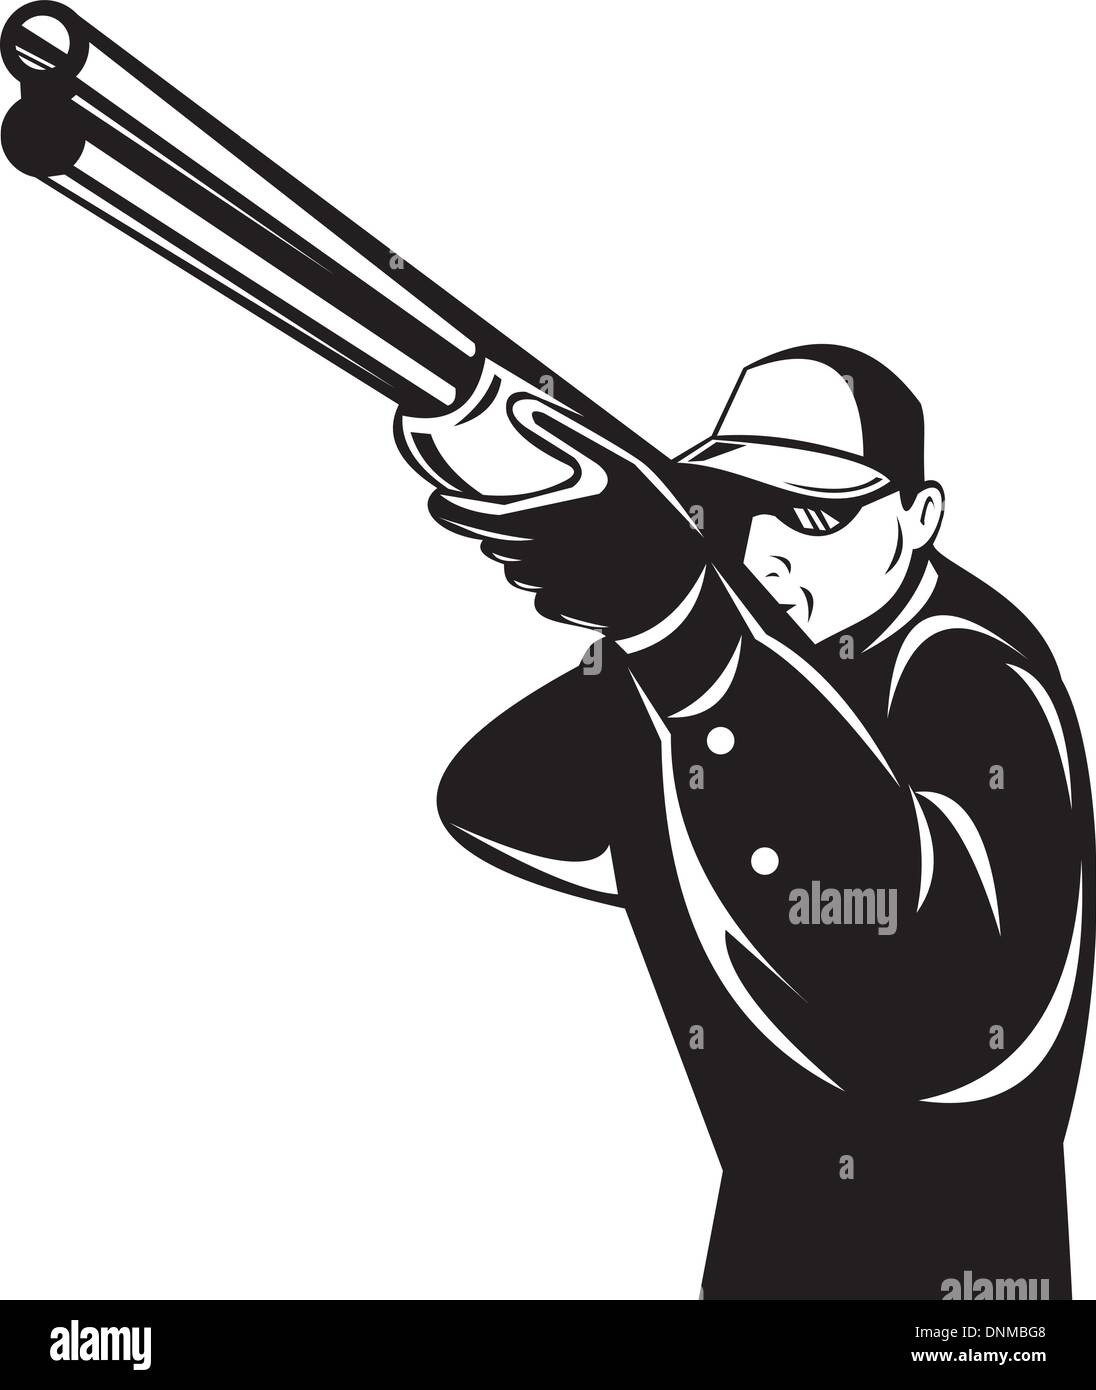 Illustrazione di un cacciatore mirando a fucile pistola fucile fatto in stile retrò su sfondo isolato Illustrazione Vettoriale